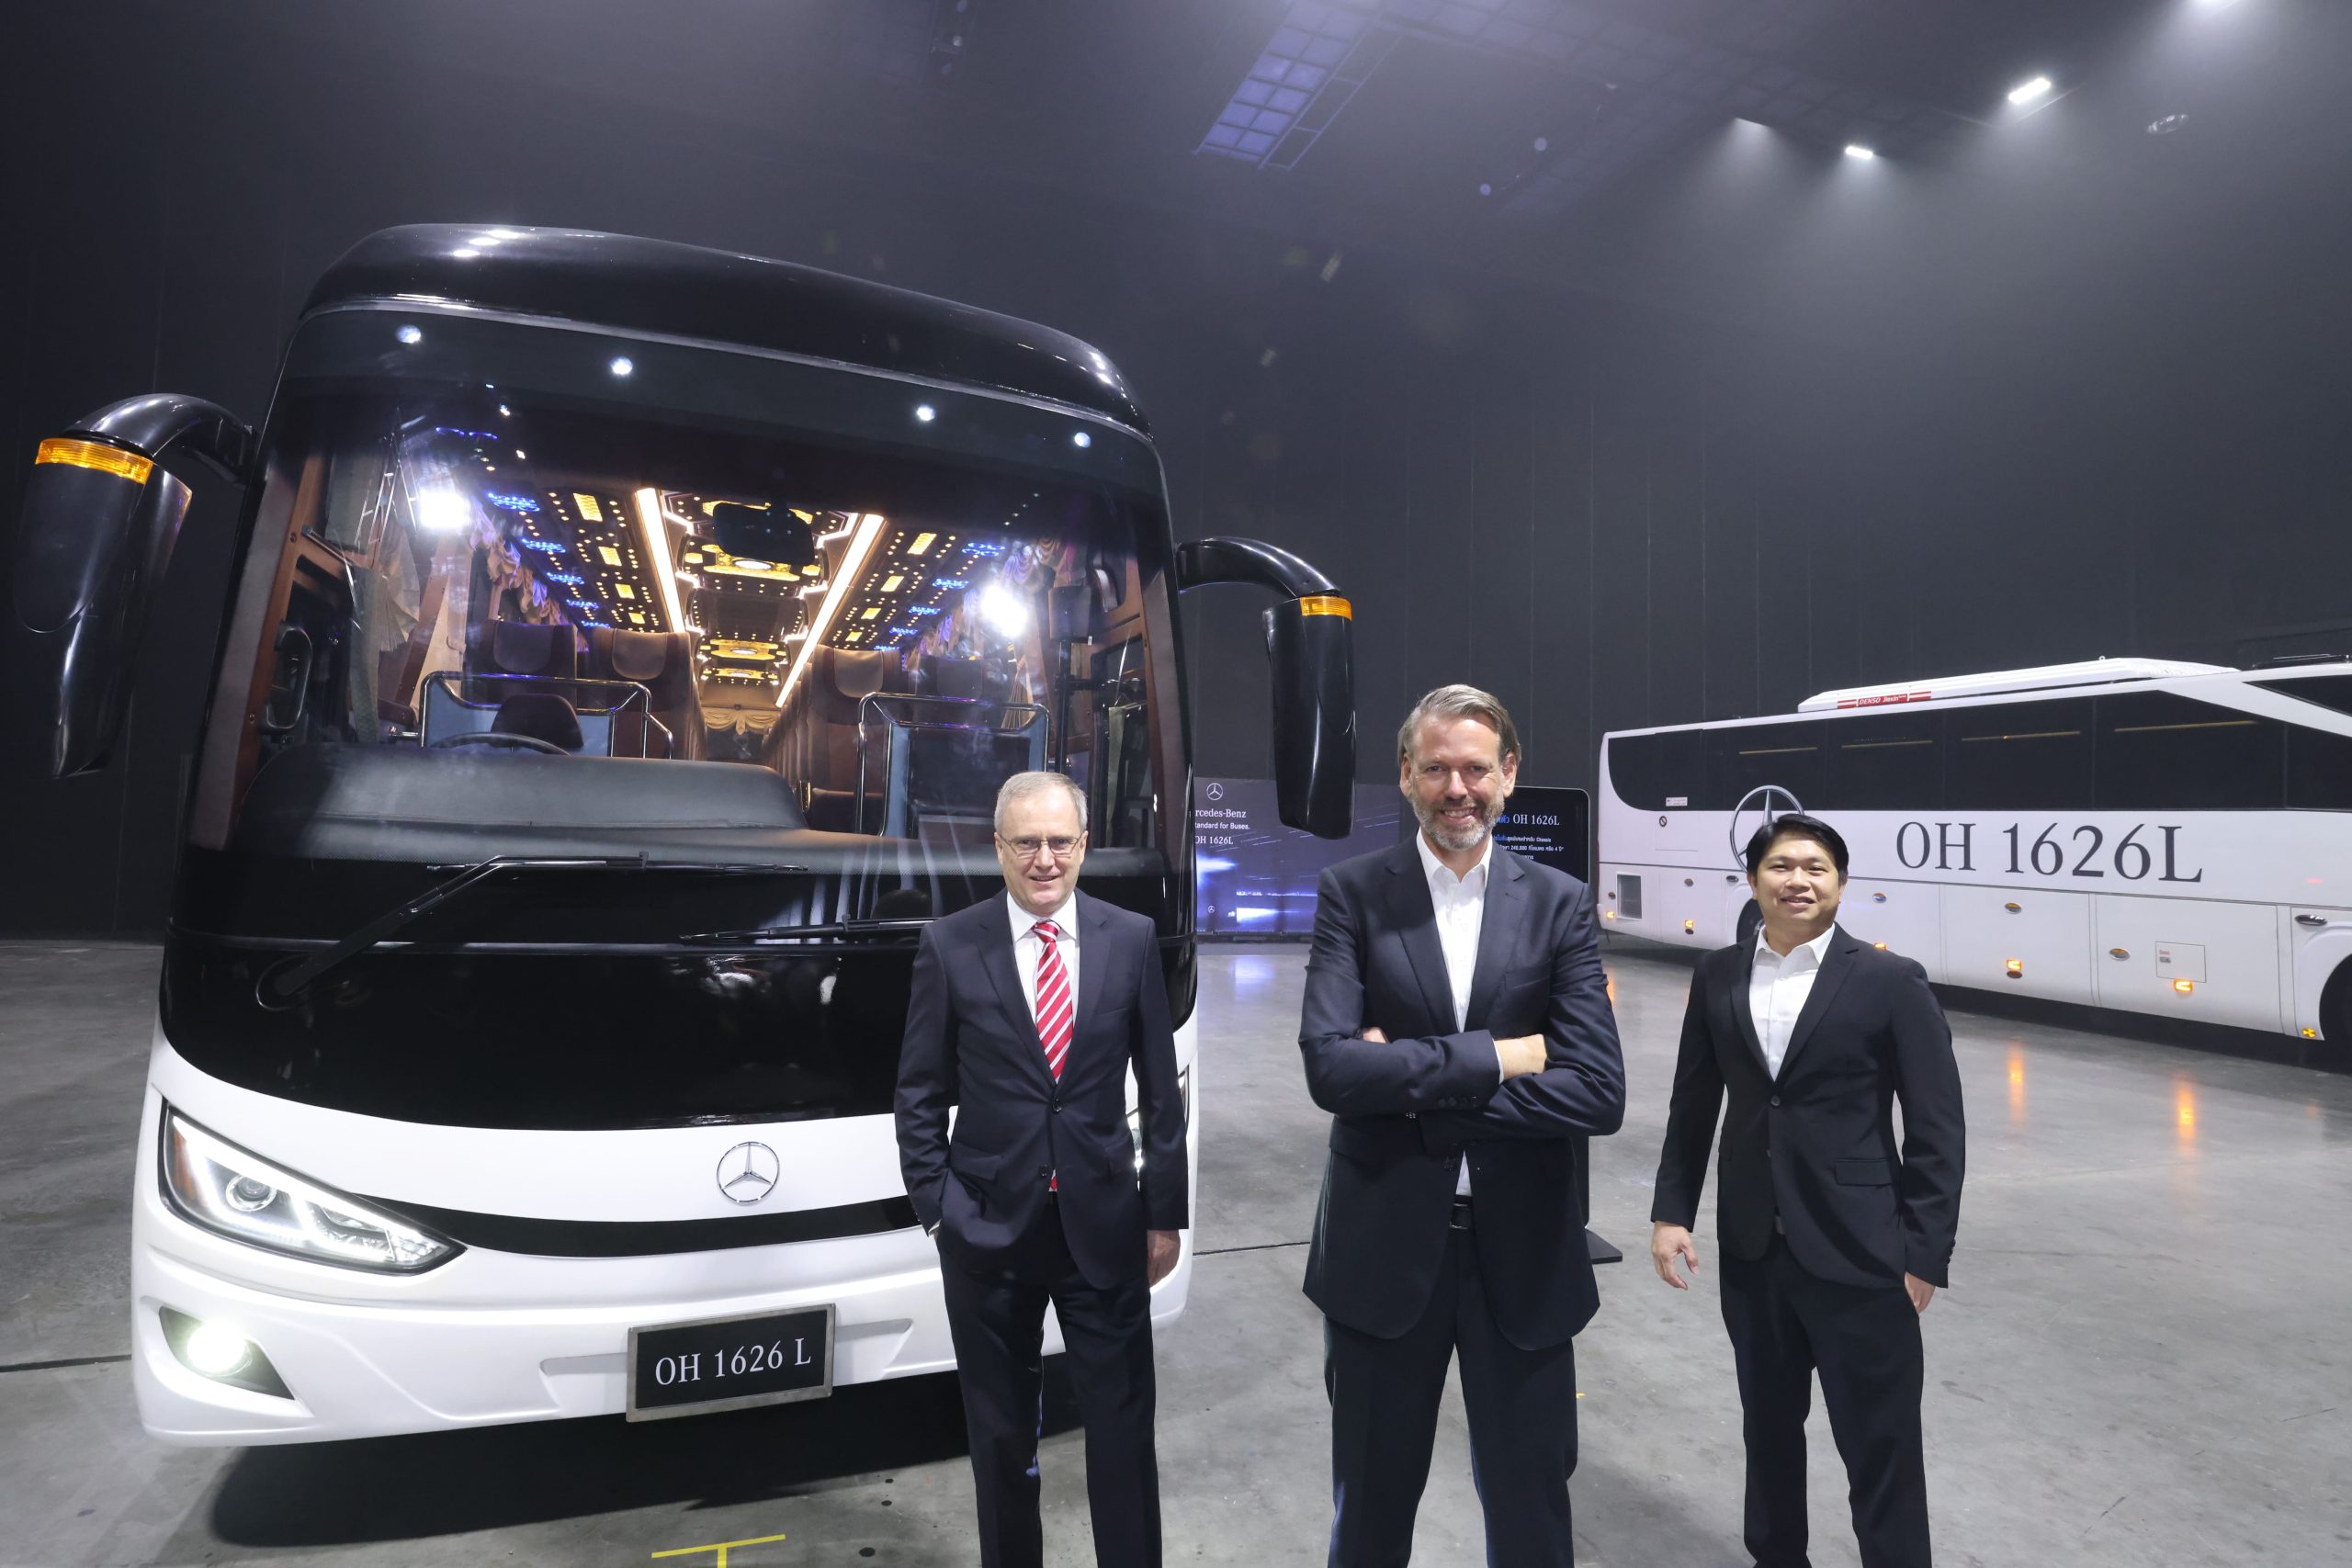 เดมเลอร์ คอมเมอร์เชียล วีฮีเคิลส์ (ประเทศไทย) เขย่าตลาดรถบัส ส่ง Mercedes-Benz Bus รุ่นใหม่ หนุนผู้ประกอบการขนส่ง และท่องเที่ยวเต็มสูบ